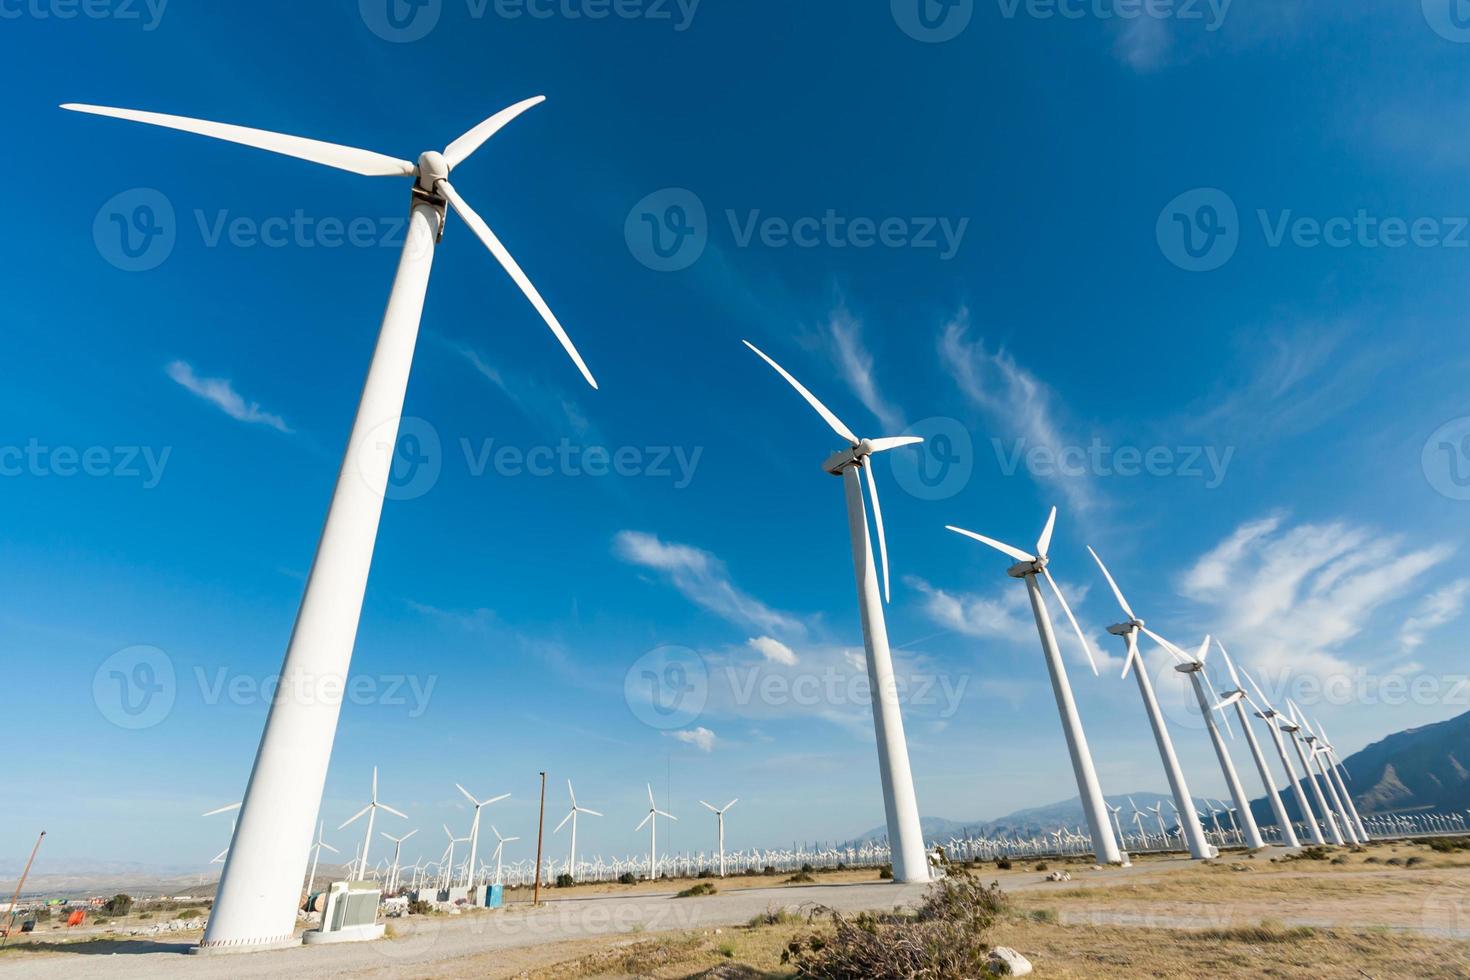 impressionante fazenda de turbinas eólicas no deserto da Califórnia. foto